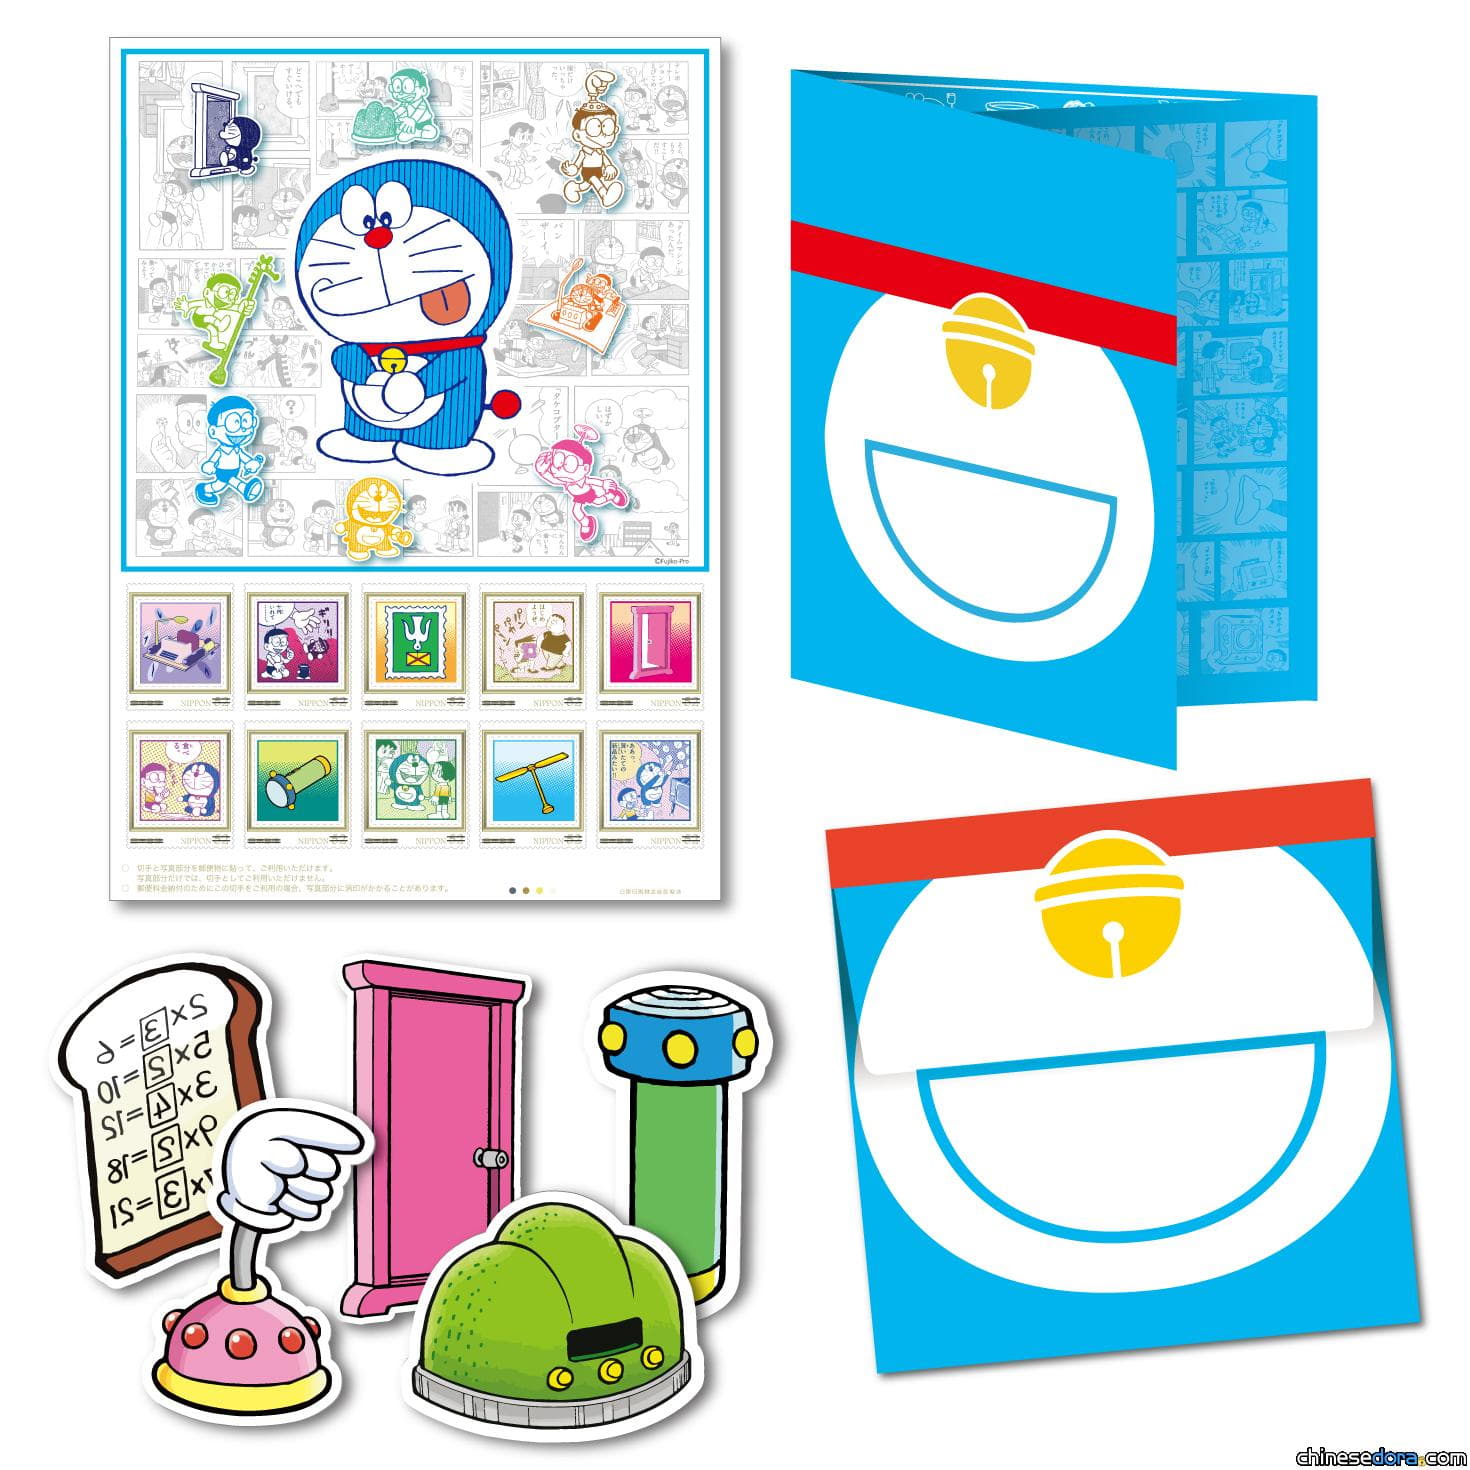 [日本] 郵局限定哆啦A夢商品又來了! 「哆啦A夢秘密道具選」11/1起發售